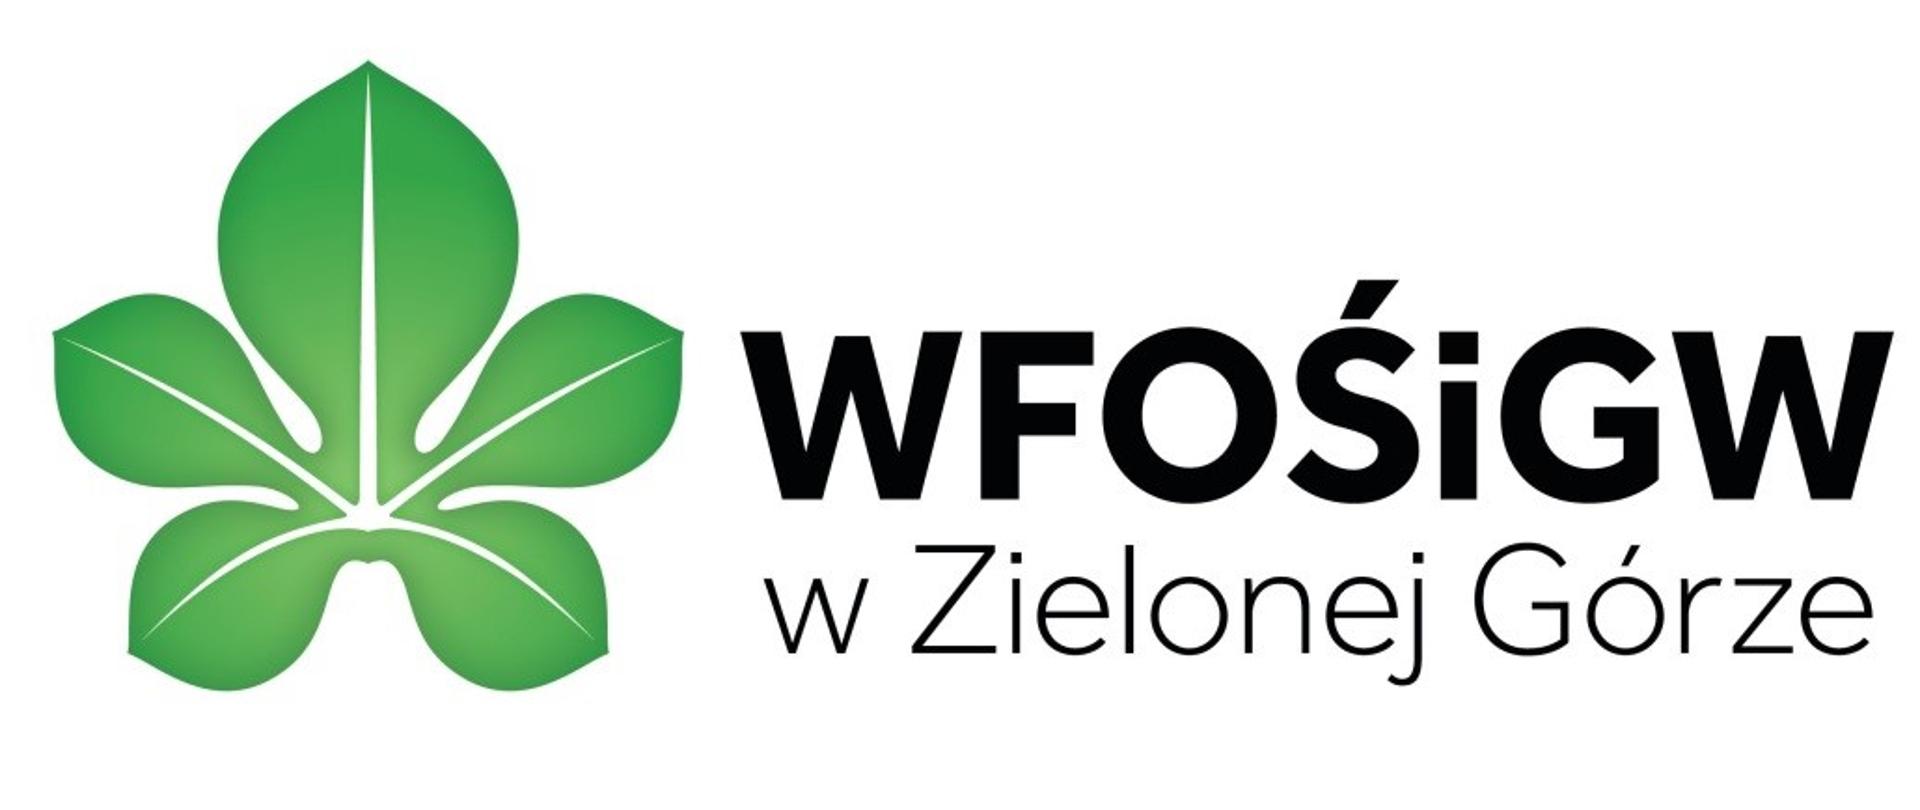 Zdjęcie przedstawia logo Wojewódzkiego Funduszu Ochrony Środowiska i Gospodarki Wodnej w Zielonej Górze.